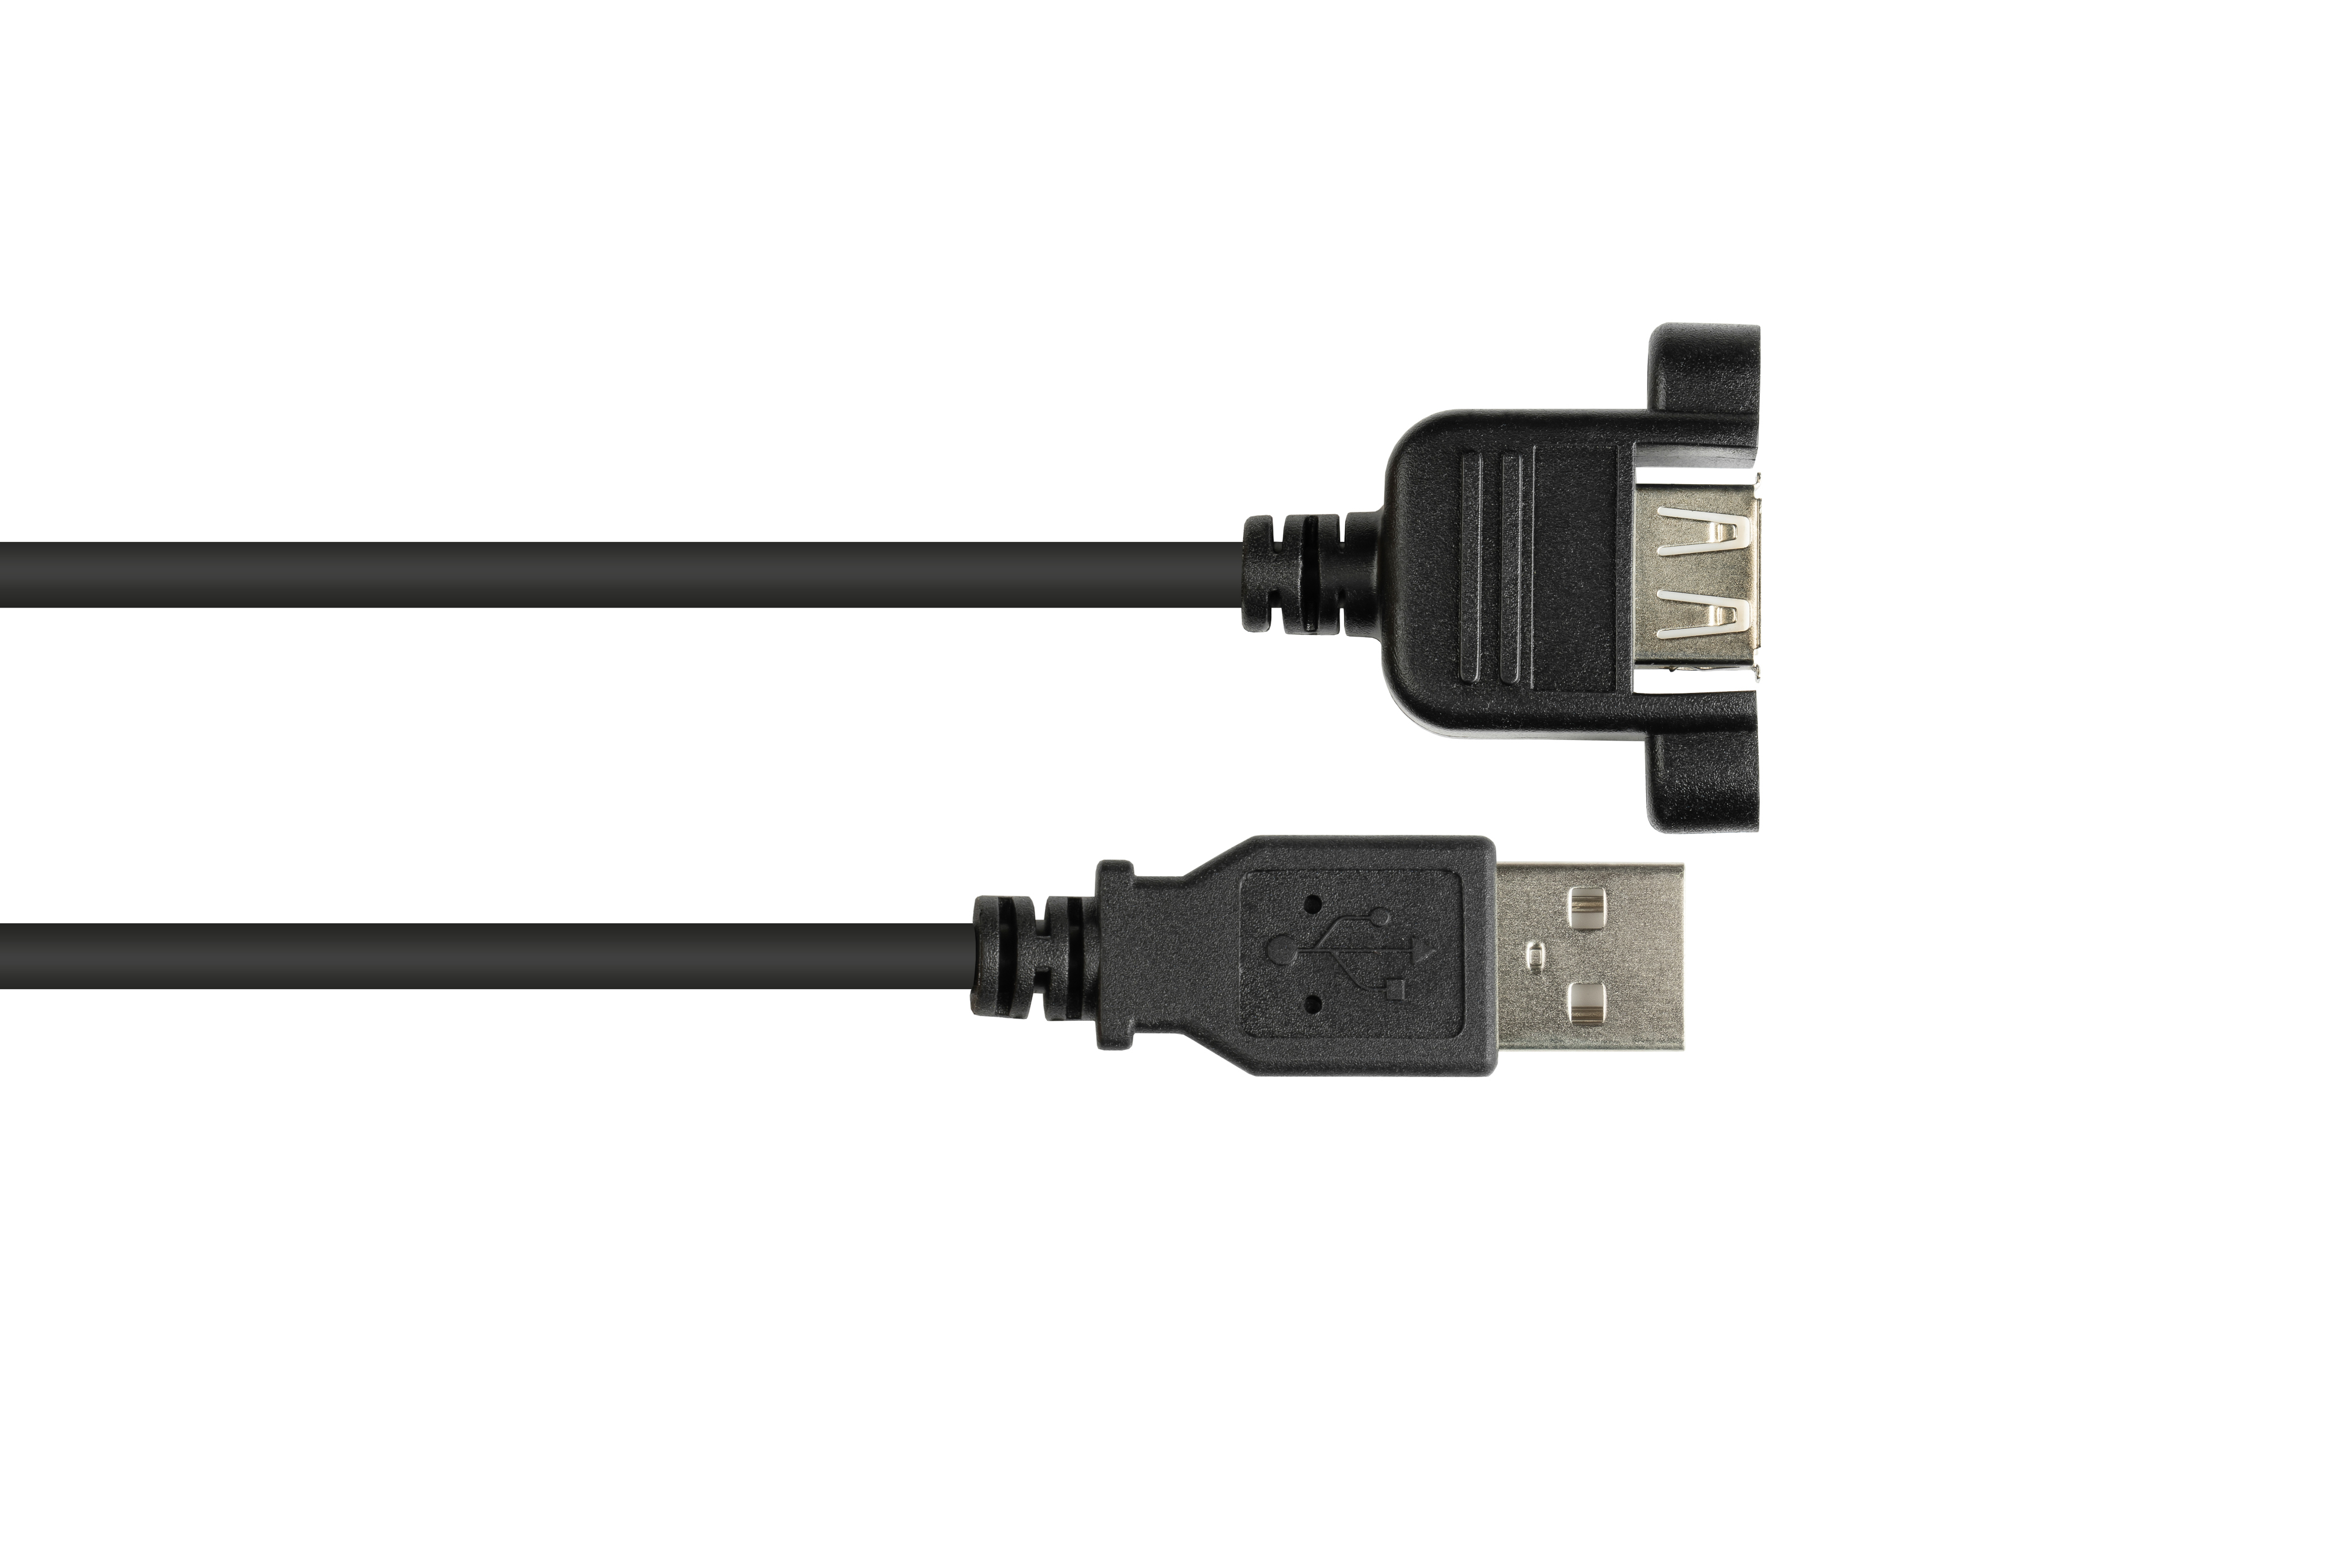 Stecker schwarz CONNECTIONS GOOD Einbaubuchse A, USB an CU, Verlängerungskabel 2.0 A